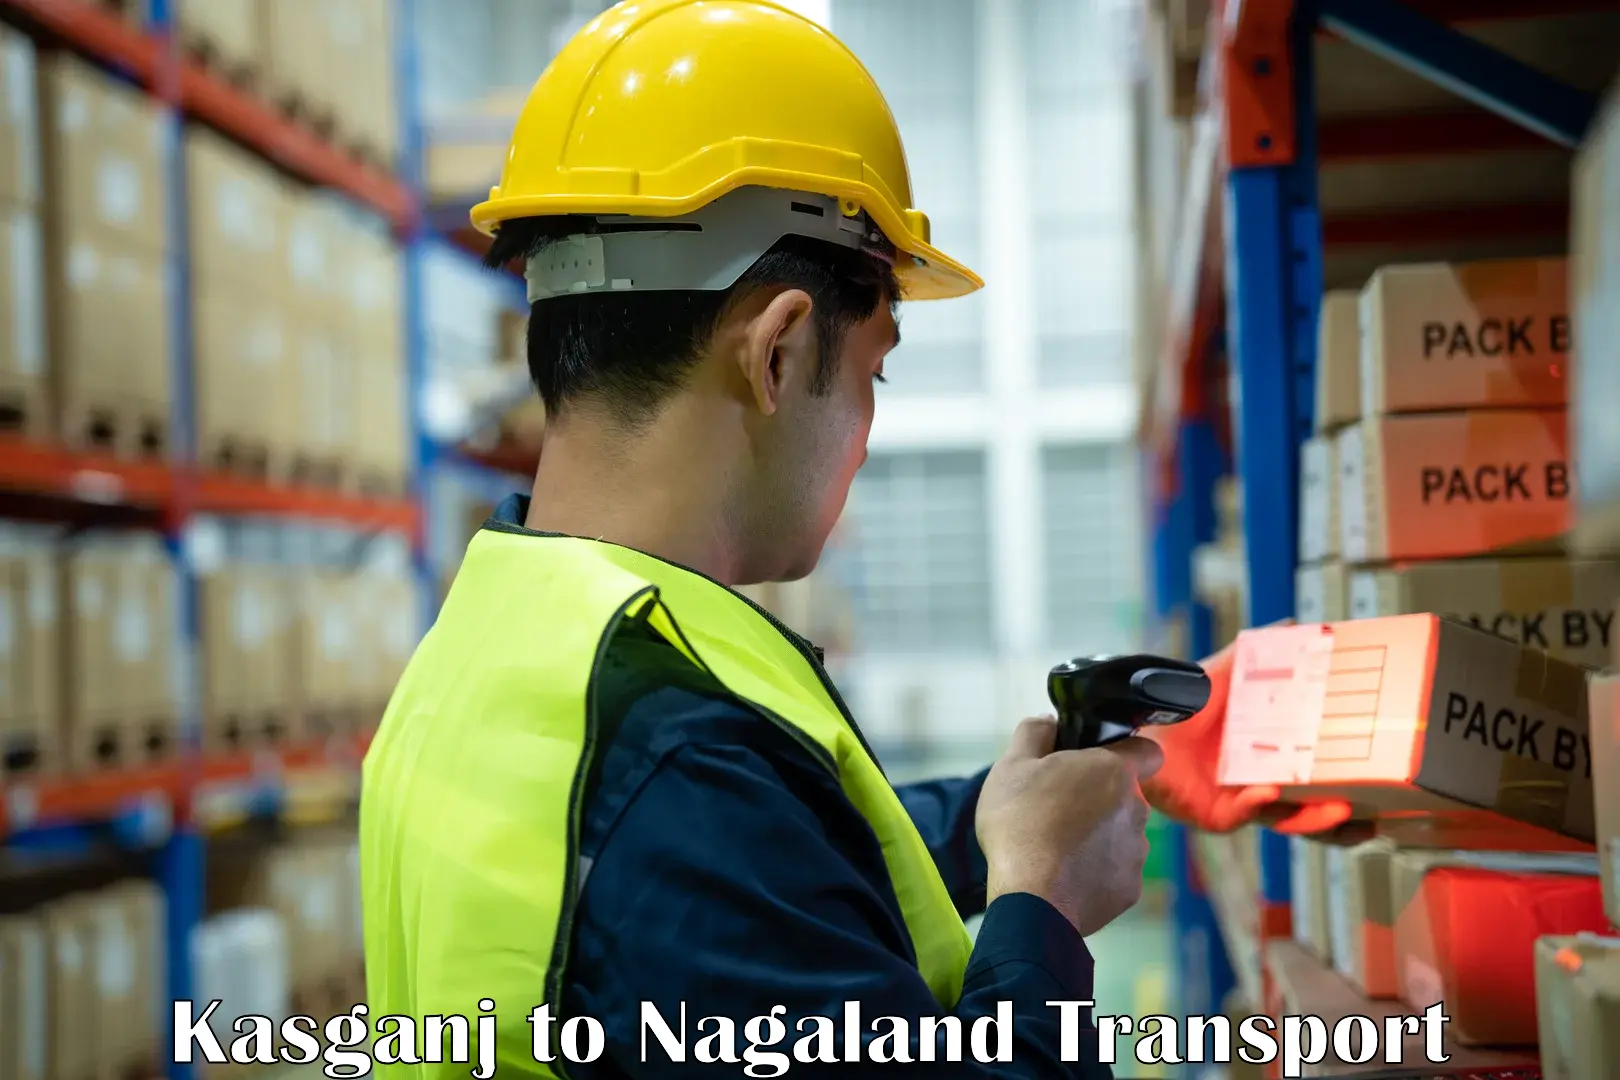 Cycle transportation service Kasganj to NIT Nagaland